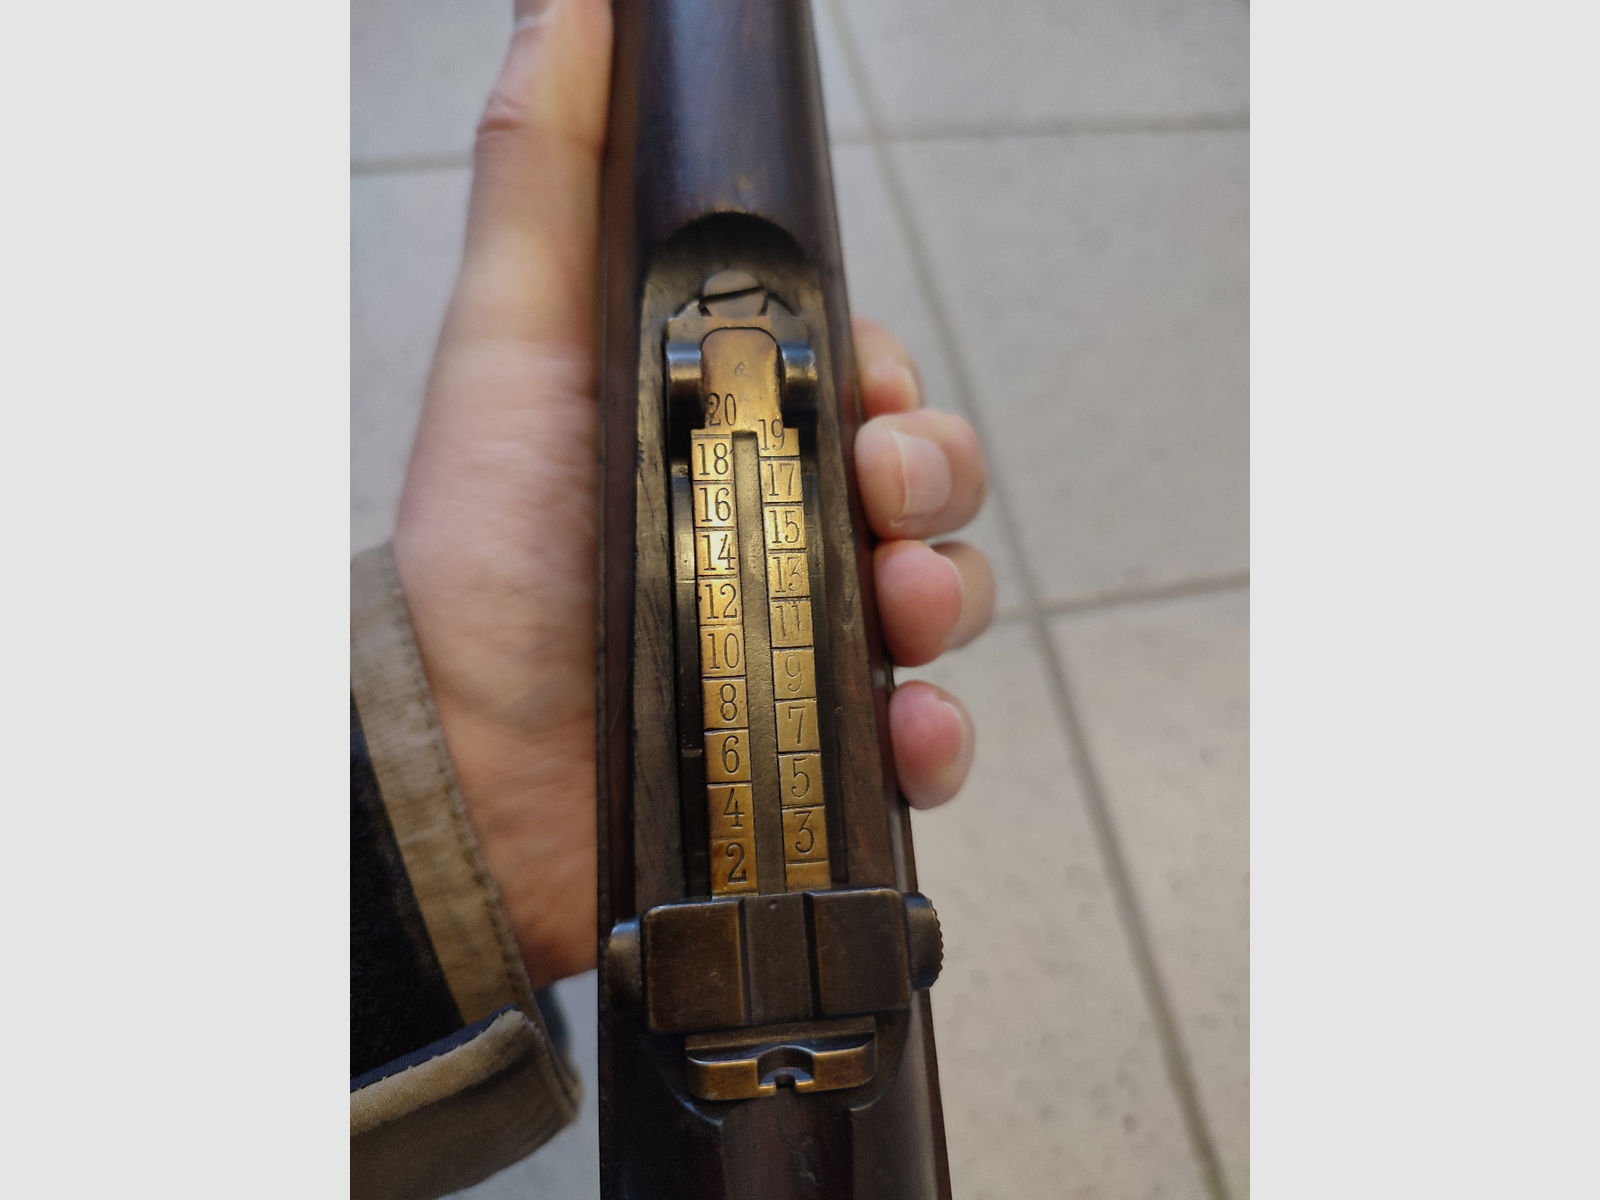 

Karabiner - DWM Mod. 1904 39 "Mauser-Vergueiro" 8x57IS (Portugal)